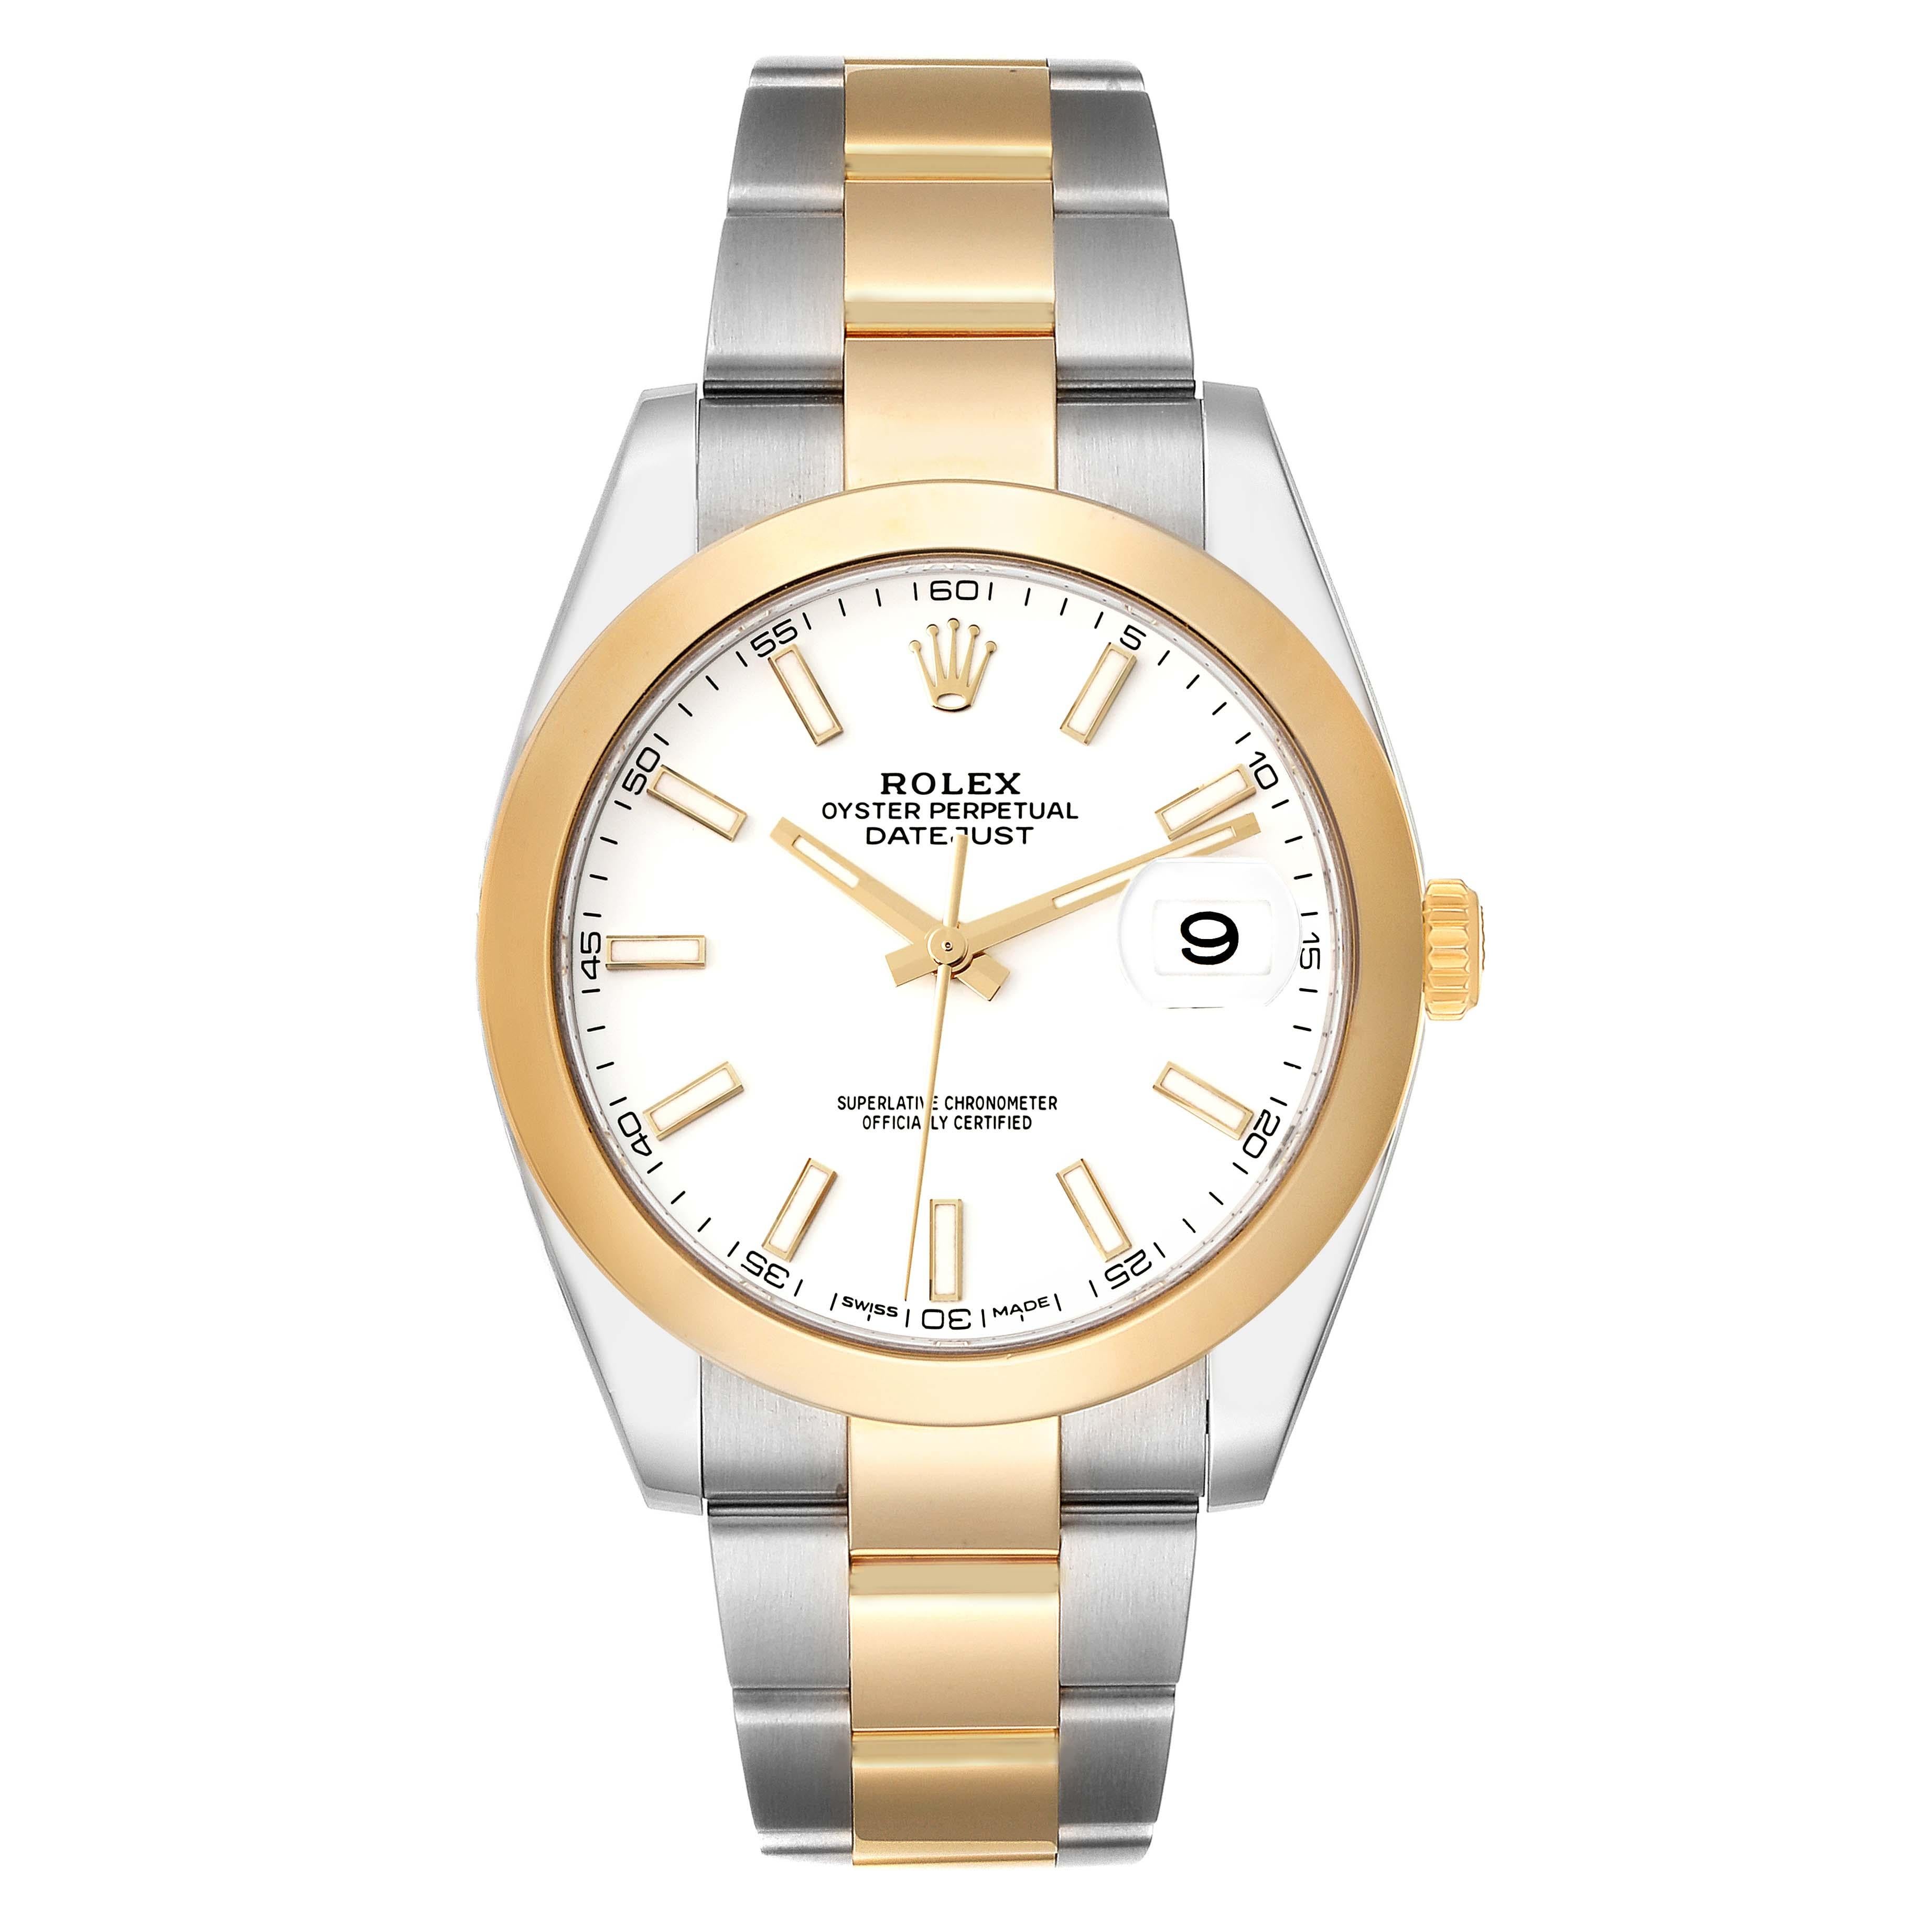 Rolex Datejust 41 Steel Yellow Gold Domed Bezel Mens Watch 126303. Mouvement automatique à remontage automatique, certifié officiellement chronomètre, avec date à réglage rapide. Boîtier en acier inoxydable et en or jaune 18 carats de 41,0 mm de